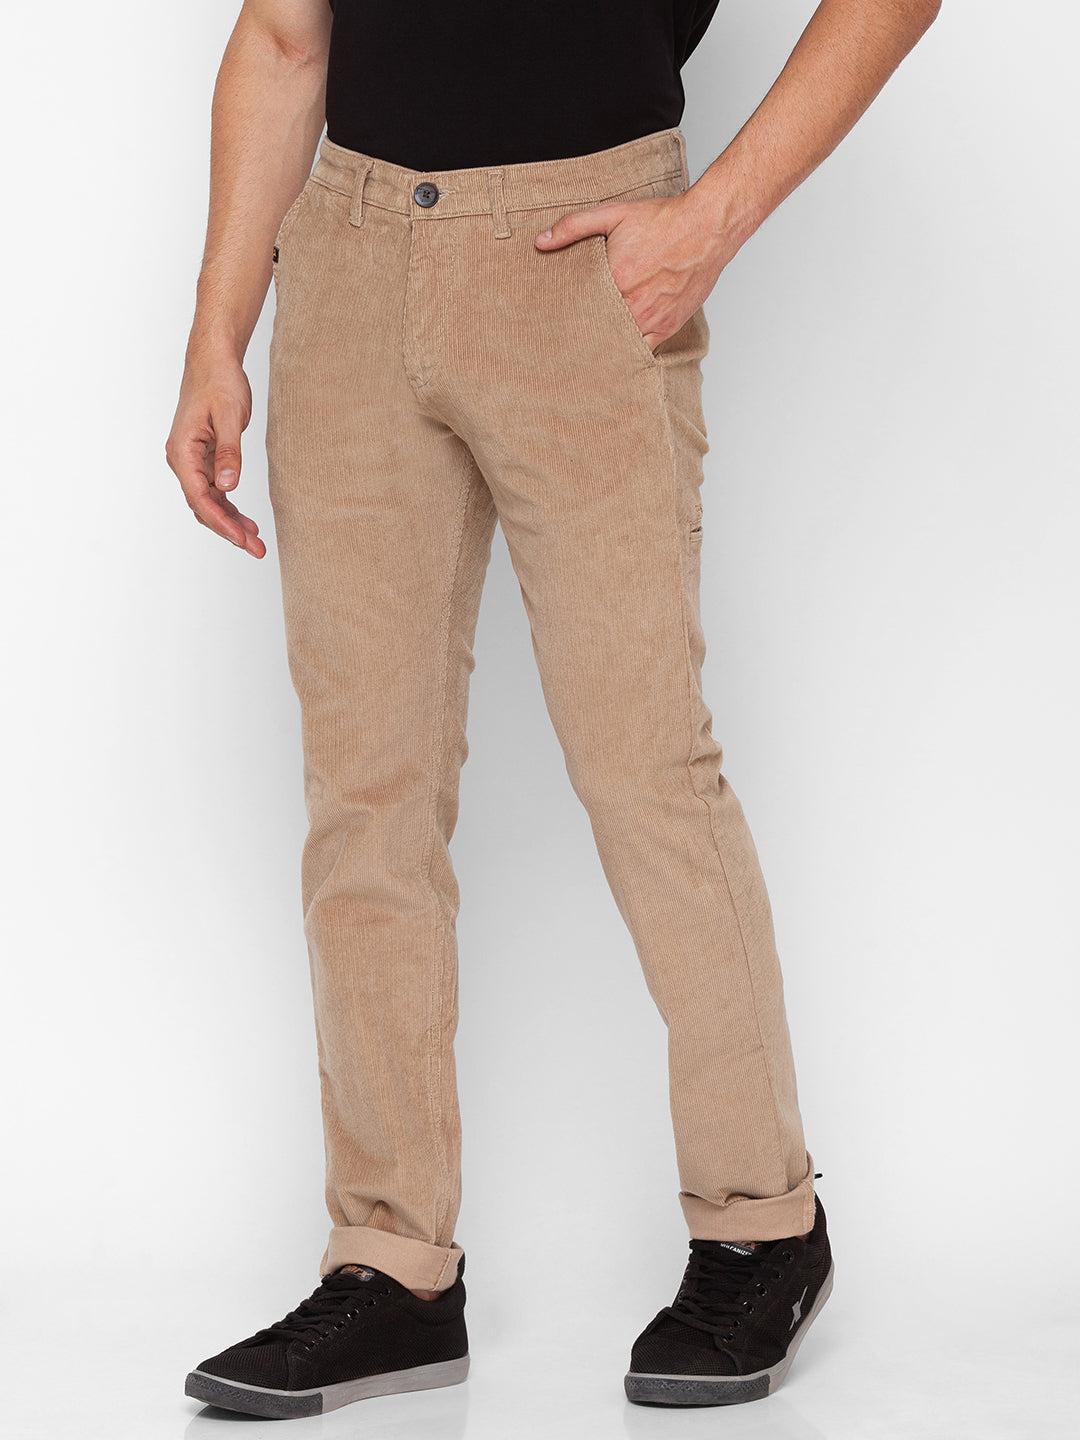 Spykar Beige Cotton Regular Fit Straight Length Trouser For Men